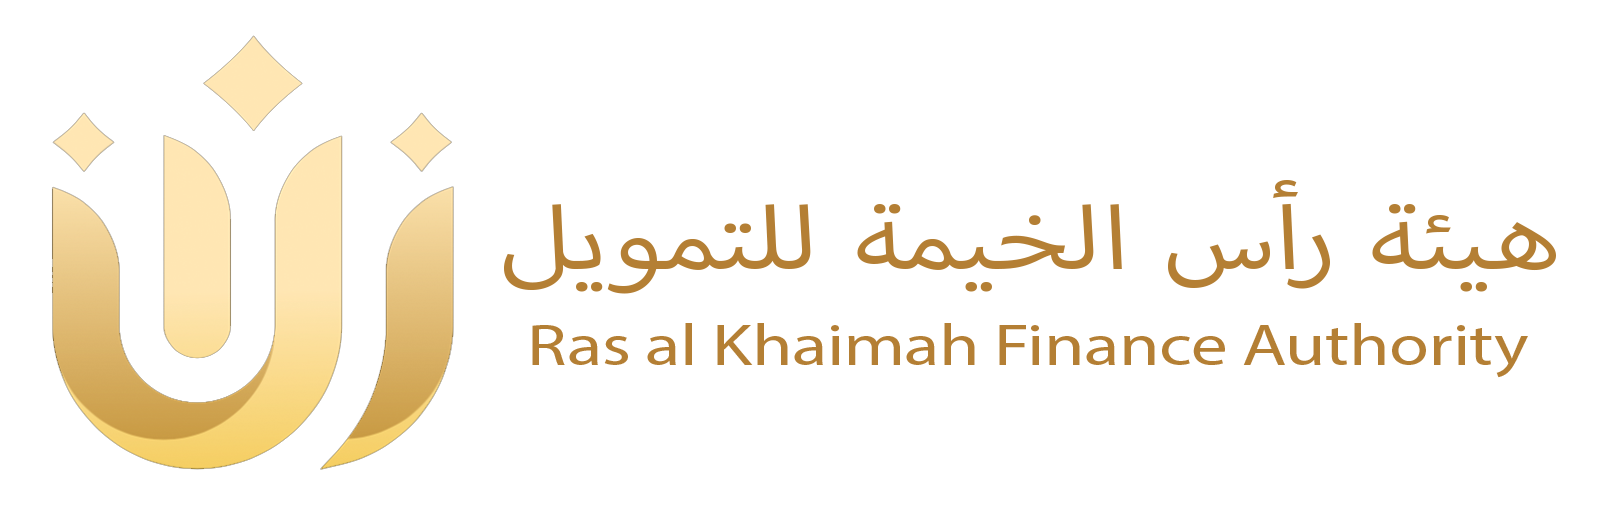 RAKFA - Ras al Khaimah Finance Authority